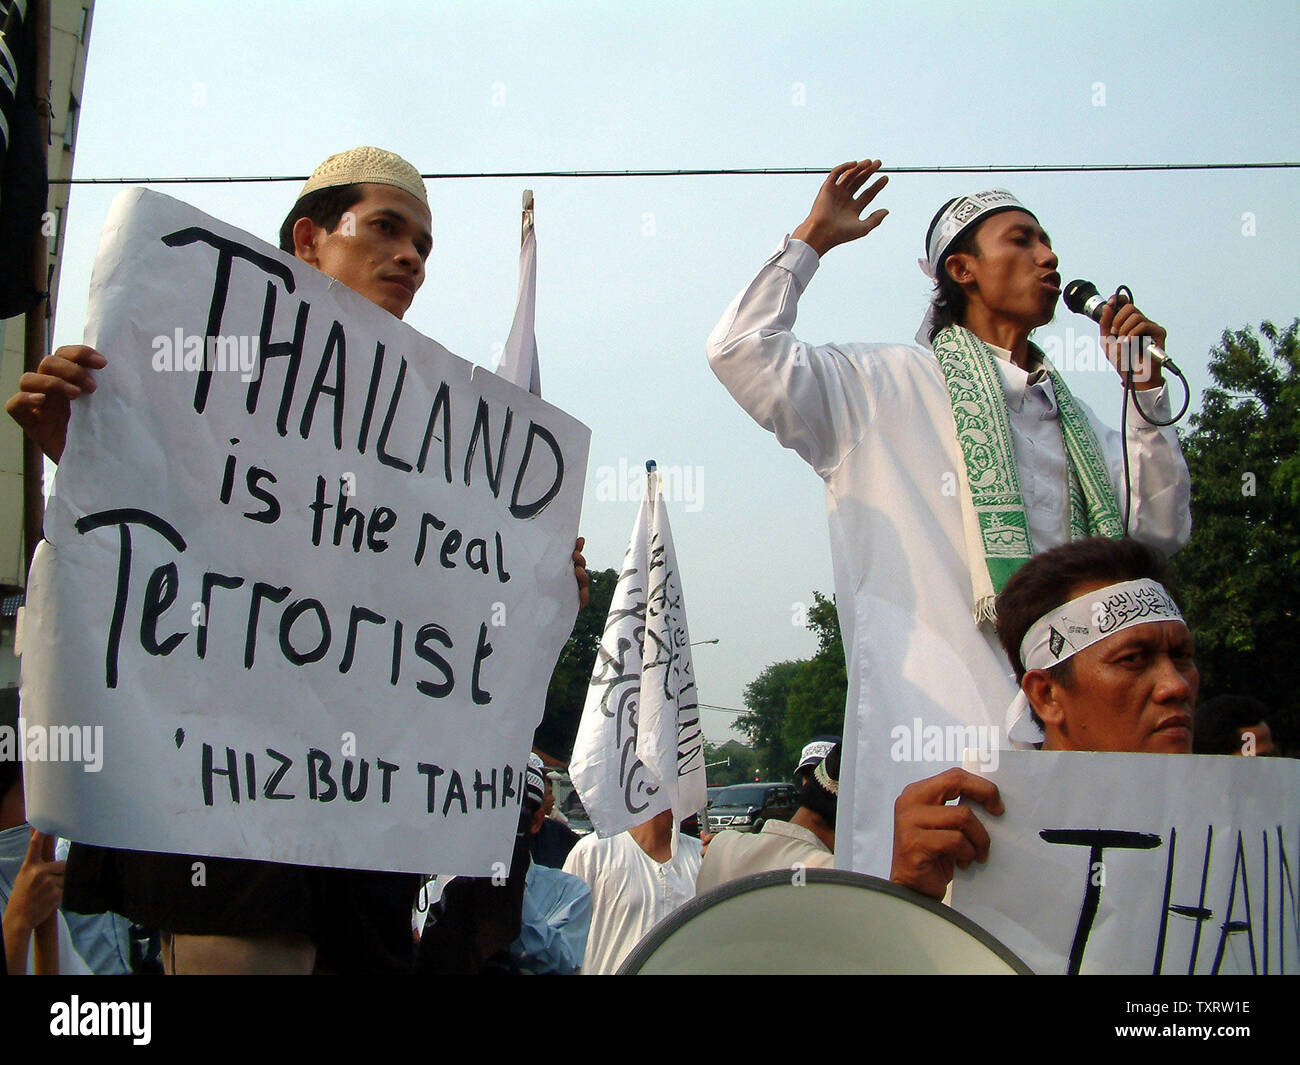 Ein demonstrant vor seinen Kollegen Demonstranten spricht während einer Demonstration vor der Thailändischen Botschaft in Jakarta, 29. Oktober 2000, die seniorenuniversität neue Tod von mindestens 84 muslimischen Aufständischen in der Provinz Narathiwat. Mindestens 200 Demonstranten zeigten ihre religiöse Solidarität und verurteilte die thailändische Polizei Aktion, die auf die große Zahl der Todesopfer geführt. (UPI/Newspictures Saprizal) Stockfoto